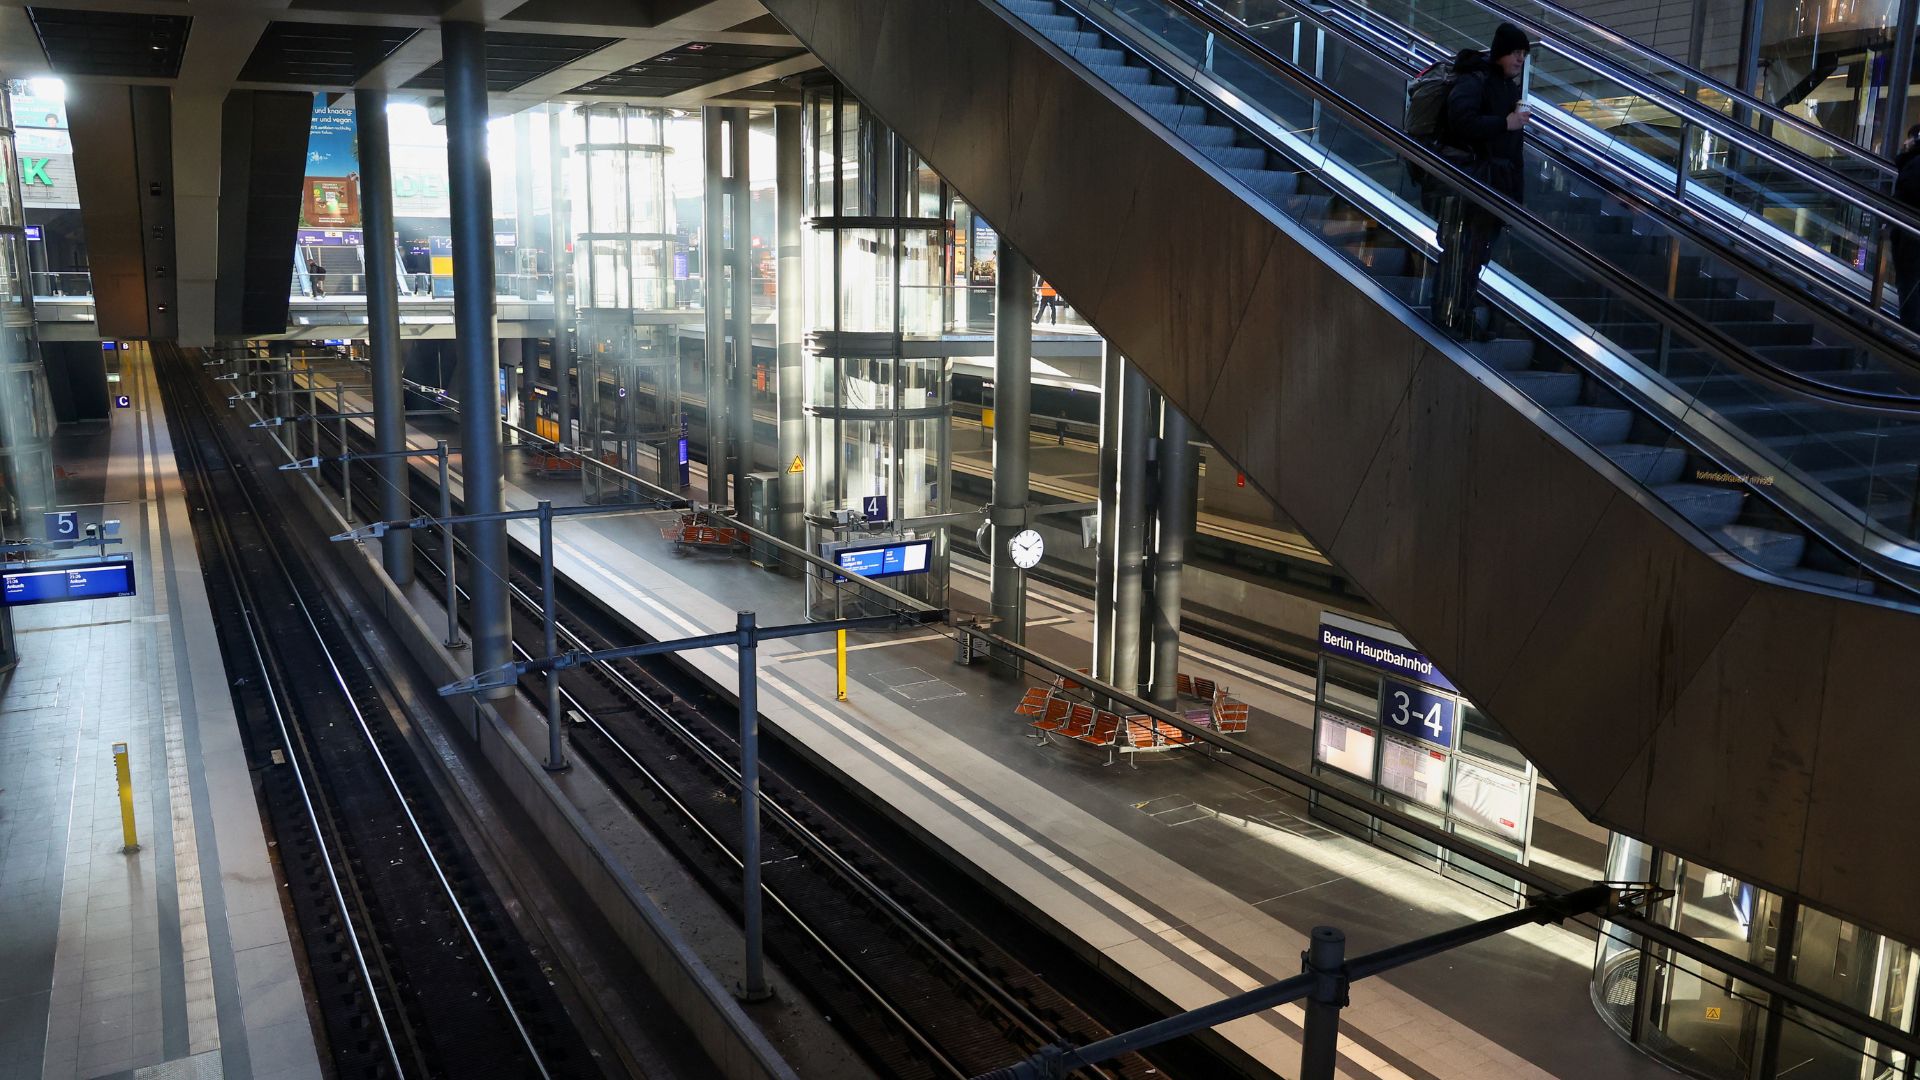 A passenger rides an escalator at Berlin's near-empty Hauptbahnhof train station. /Fabrizio Bensch/Reuters